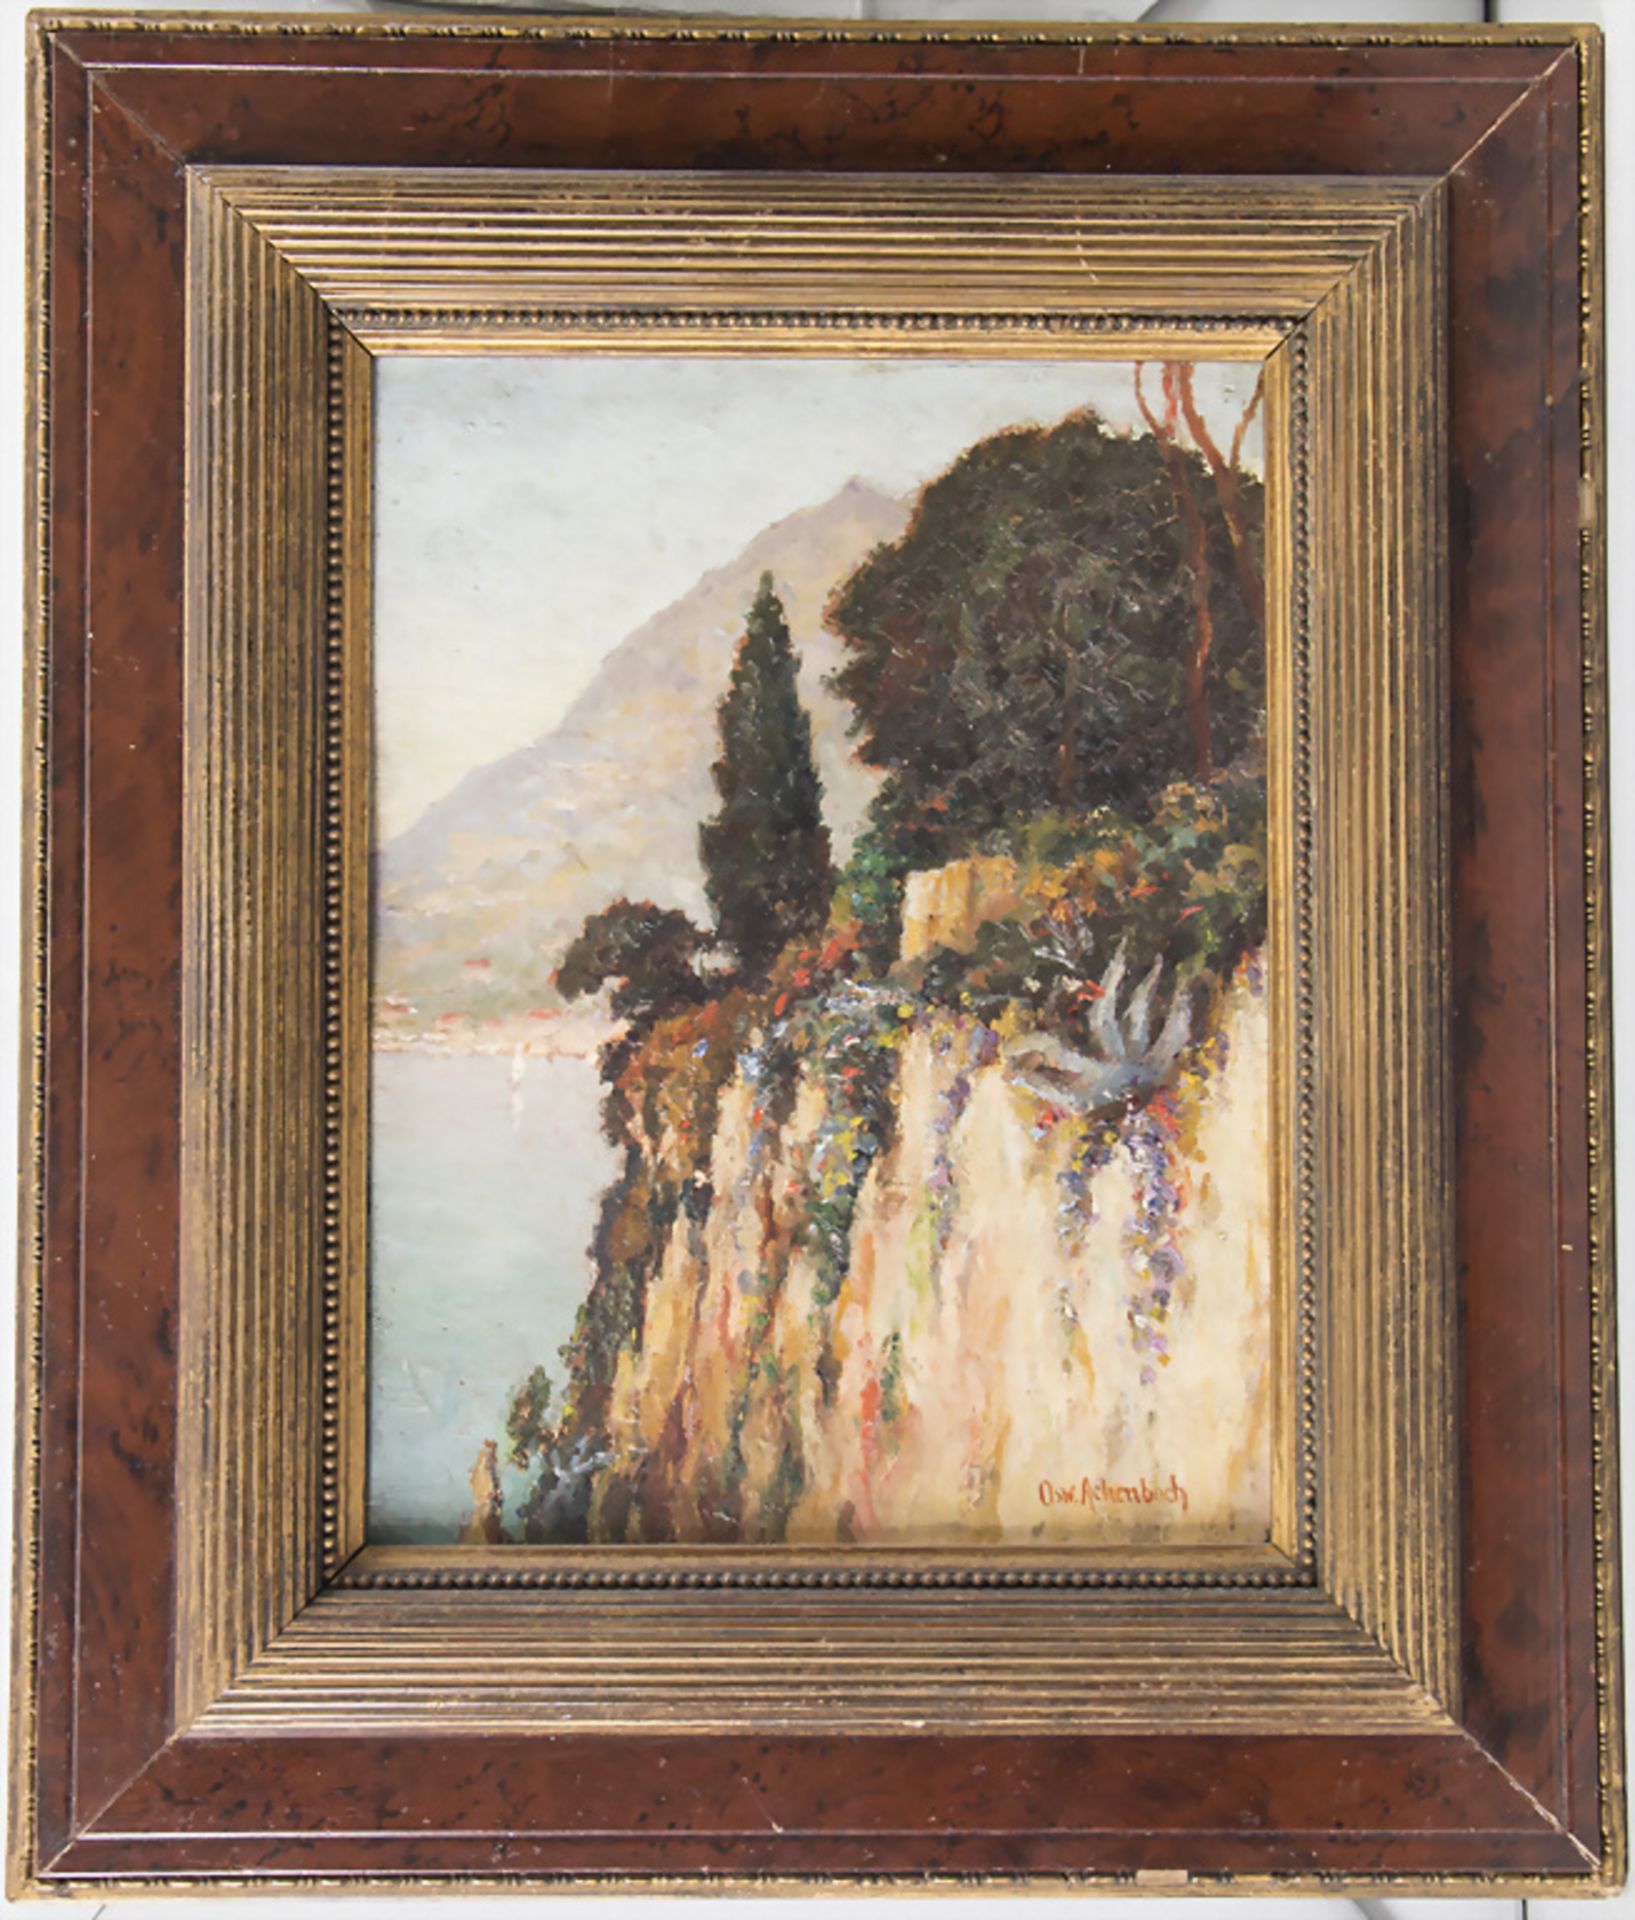 Oswald Achenbach (1827-1905), 'Mediterrane Küstenlandschaft' / 'A Mediterranean coastal landscape' - Image 2 of 4